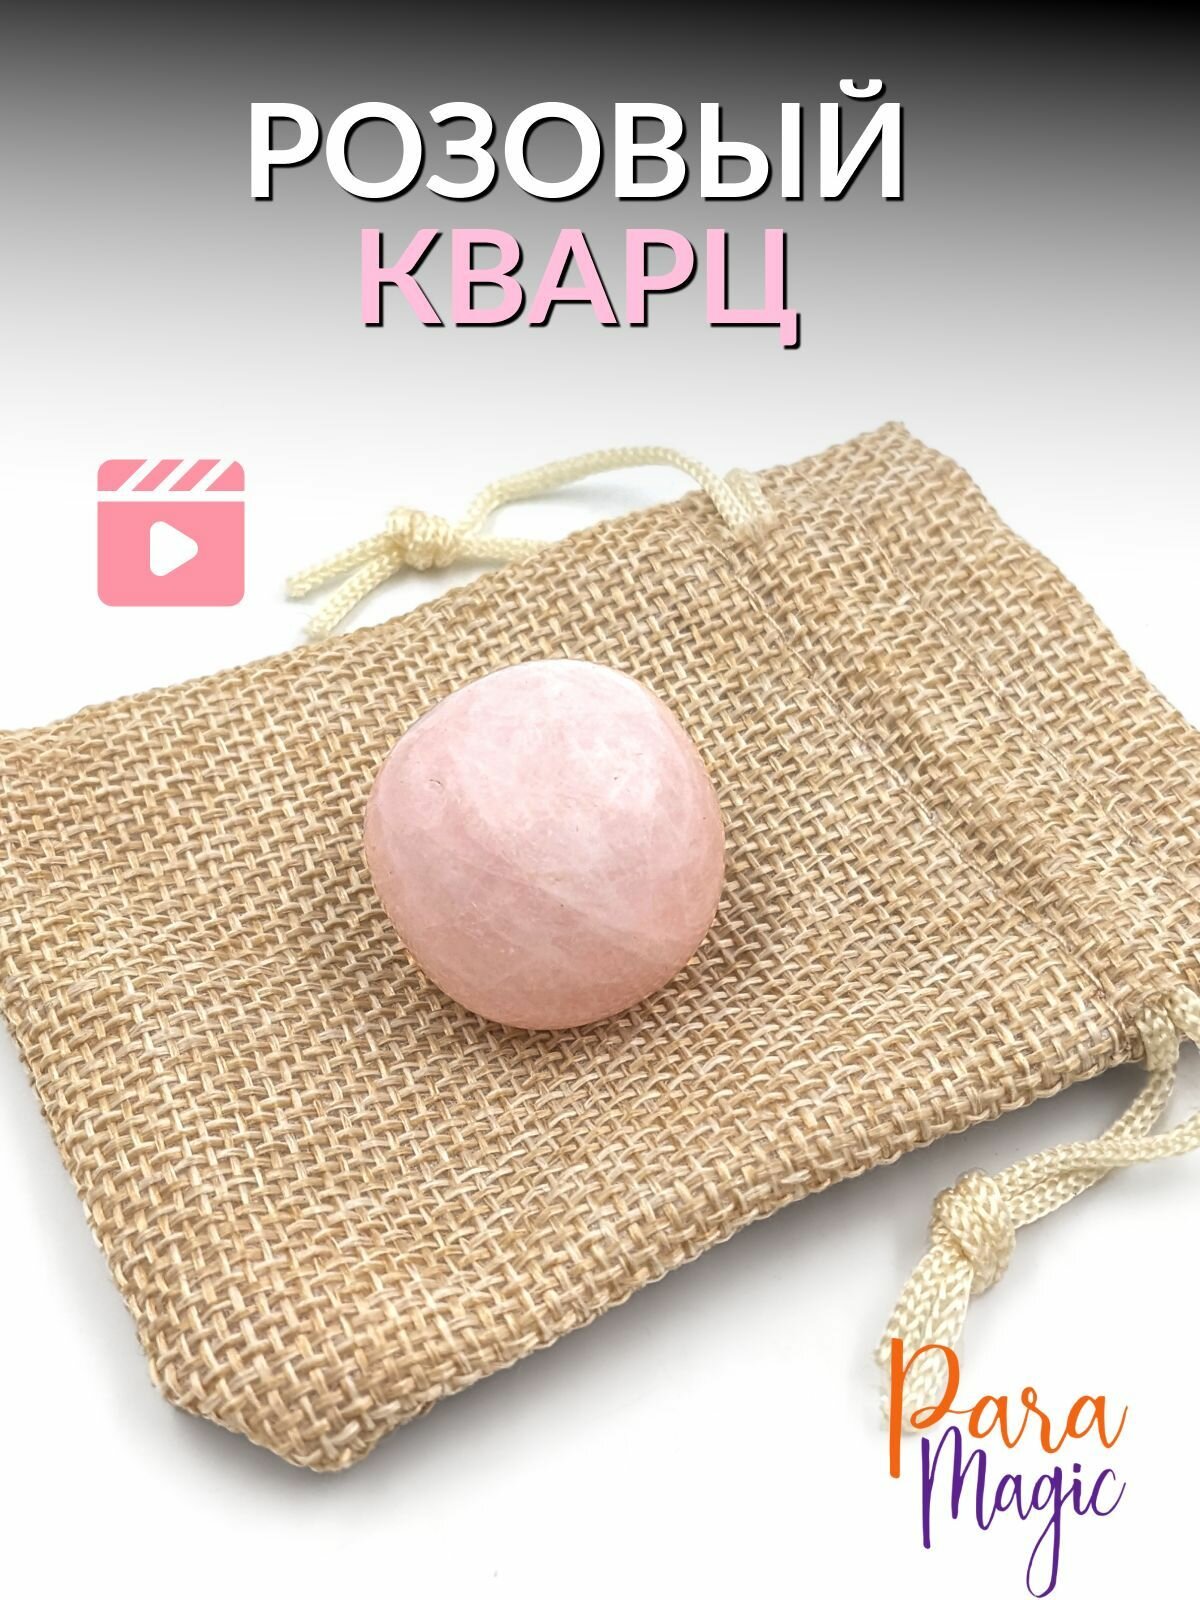 Розовый кварц обработанный натуральный камень 1шт размер 2-3см.